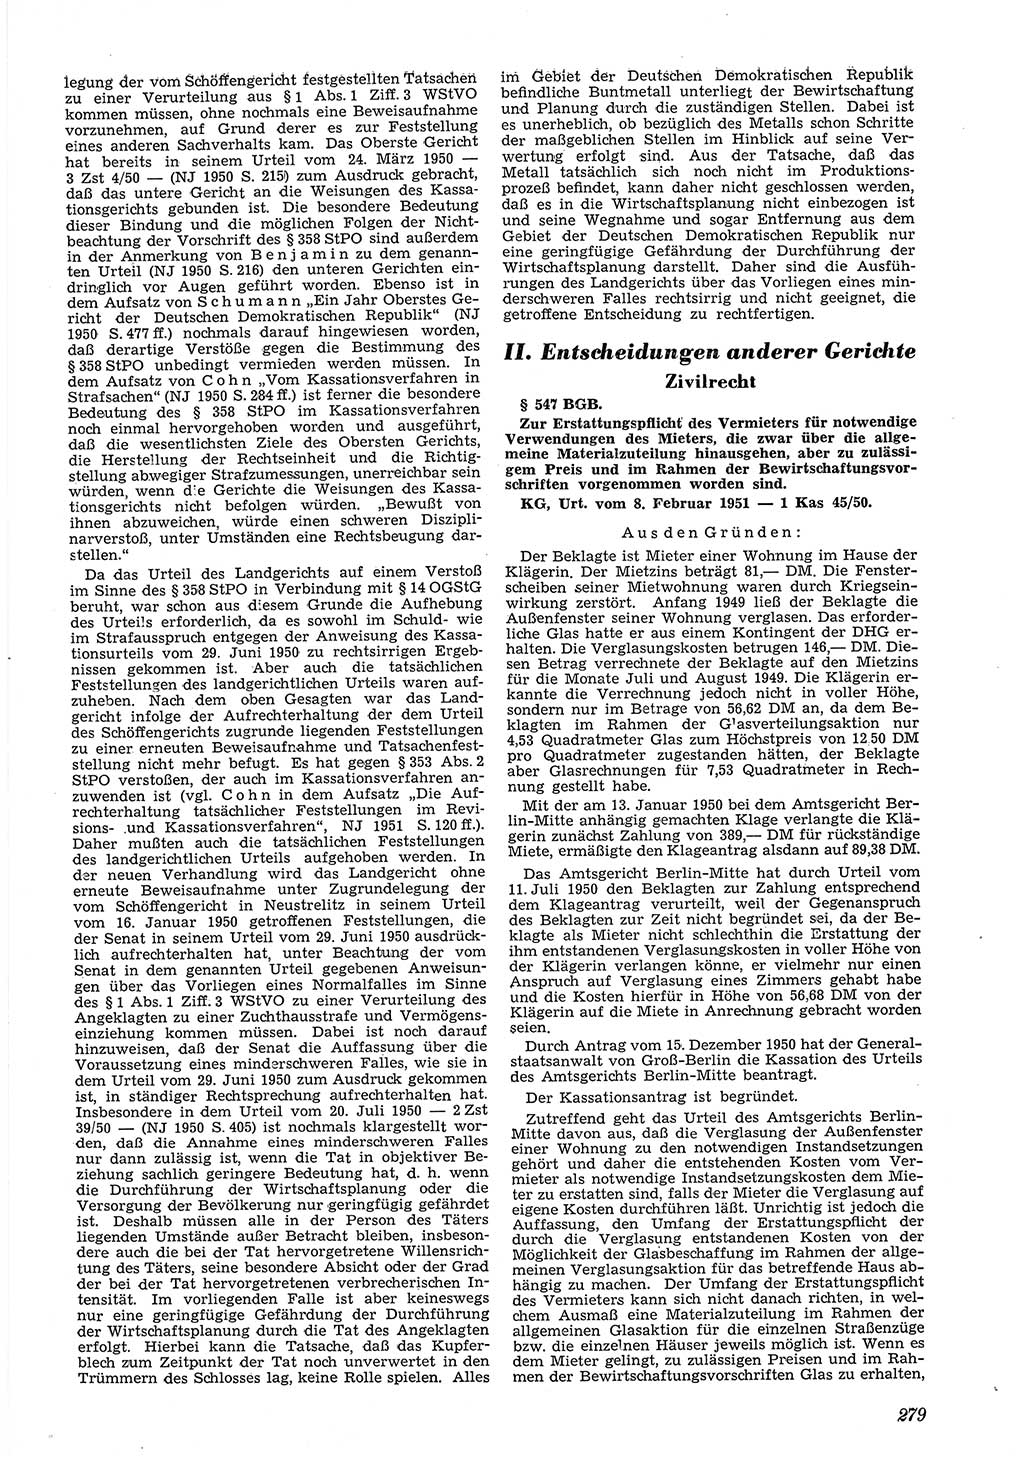 Neue Justiz (NJ), Zeitschrift für Recht und Rechtswissenschaft [Deutsche Demokratische Republik (DDR)], 5. Jahrgang 1951, Seite 279 (NJ DDR 1951, S. 279)